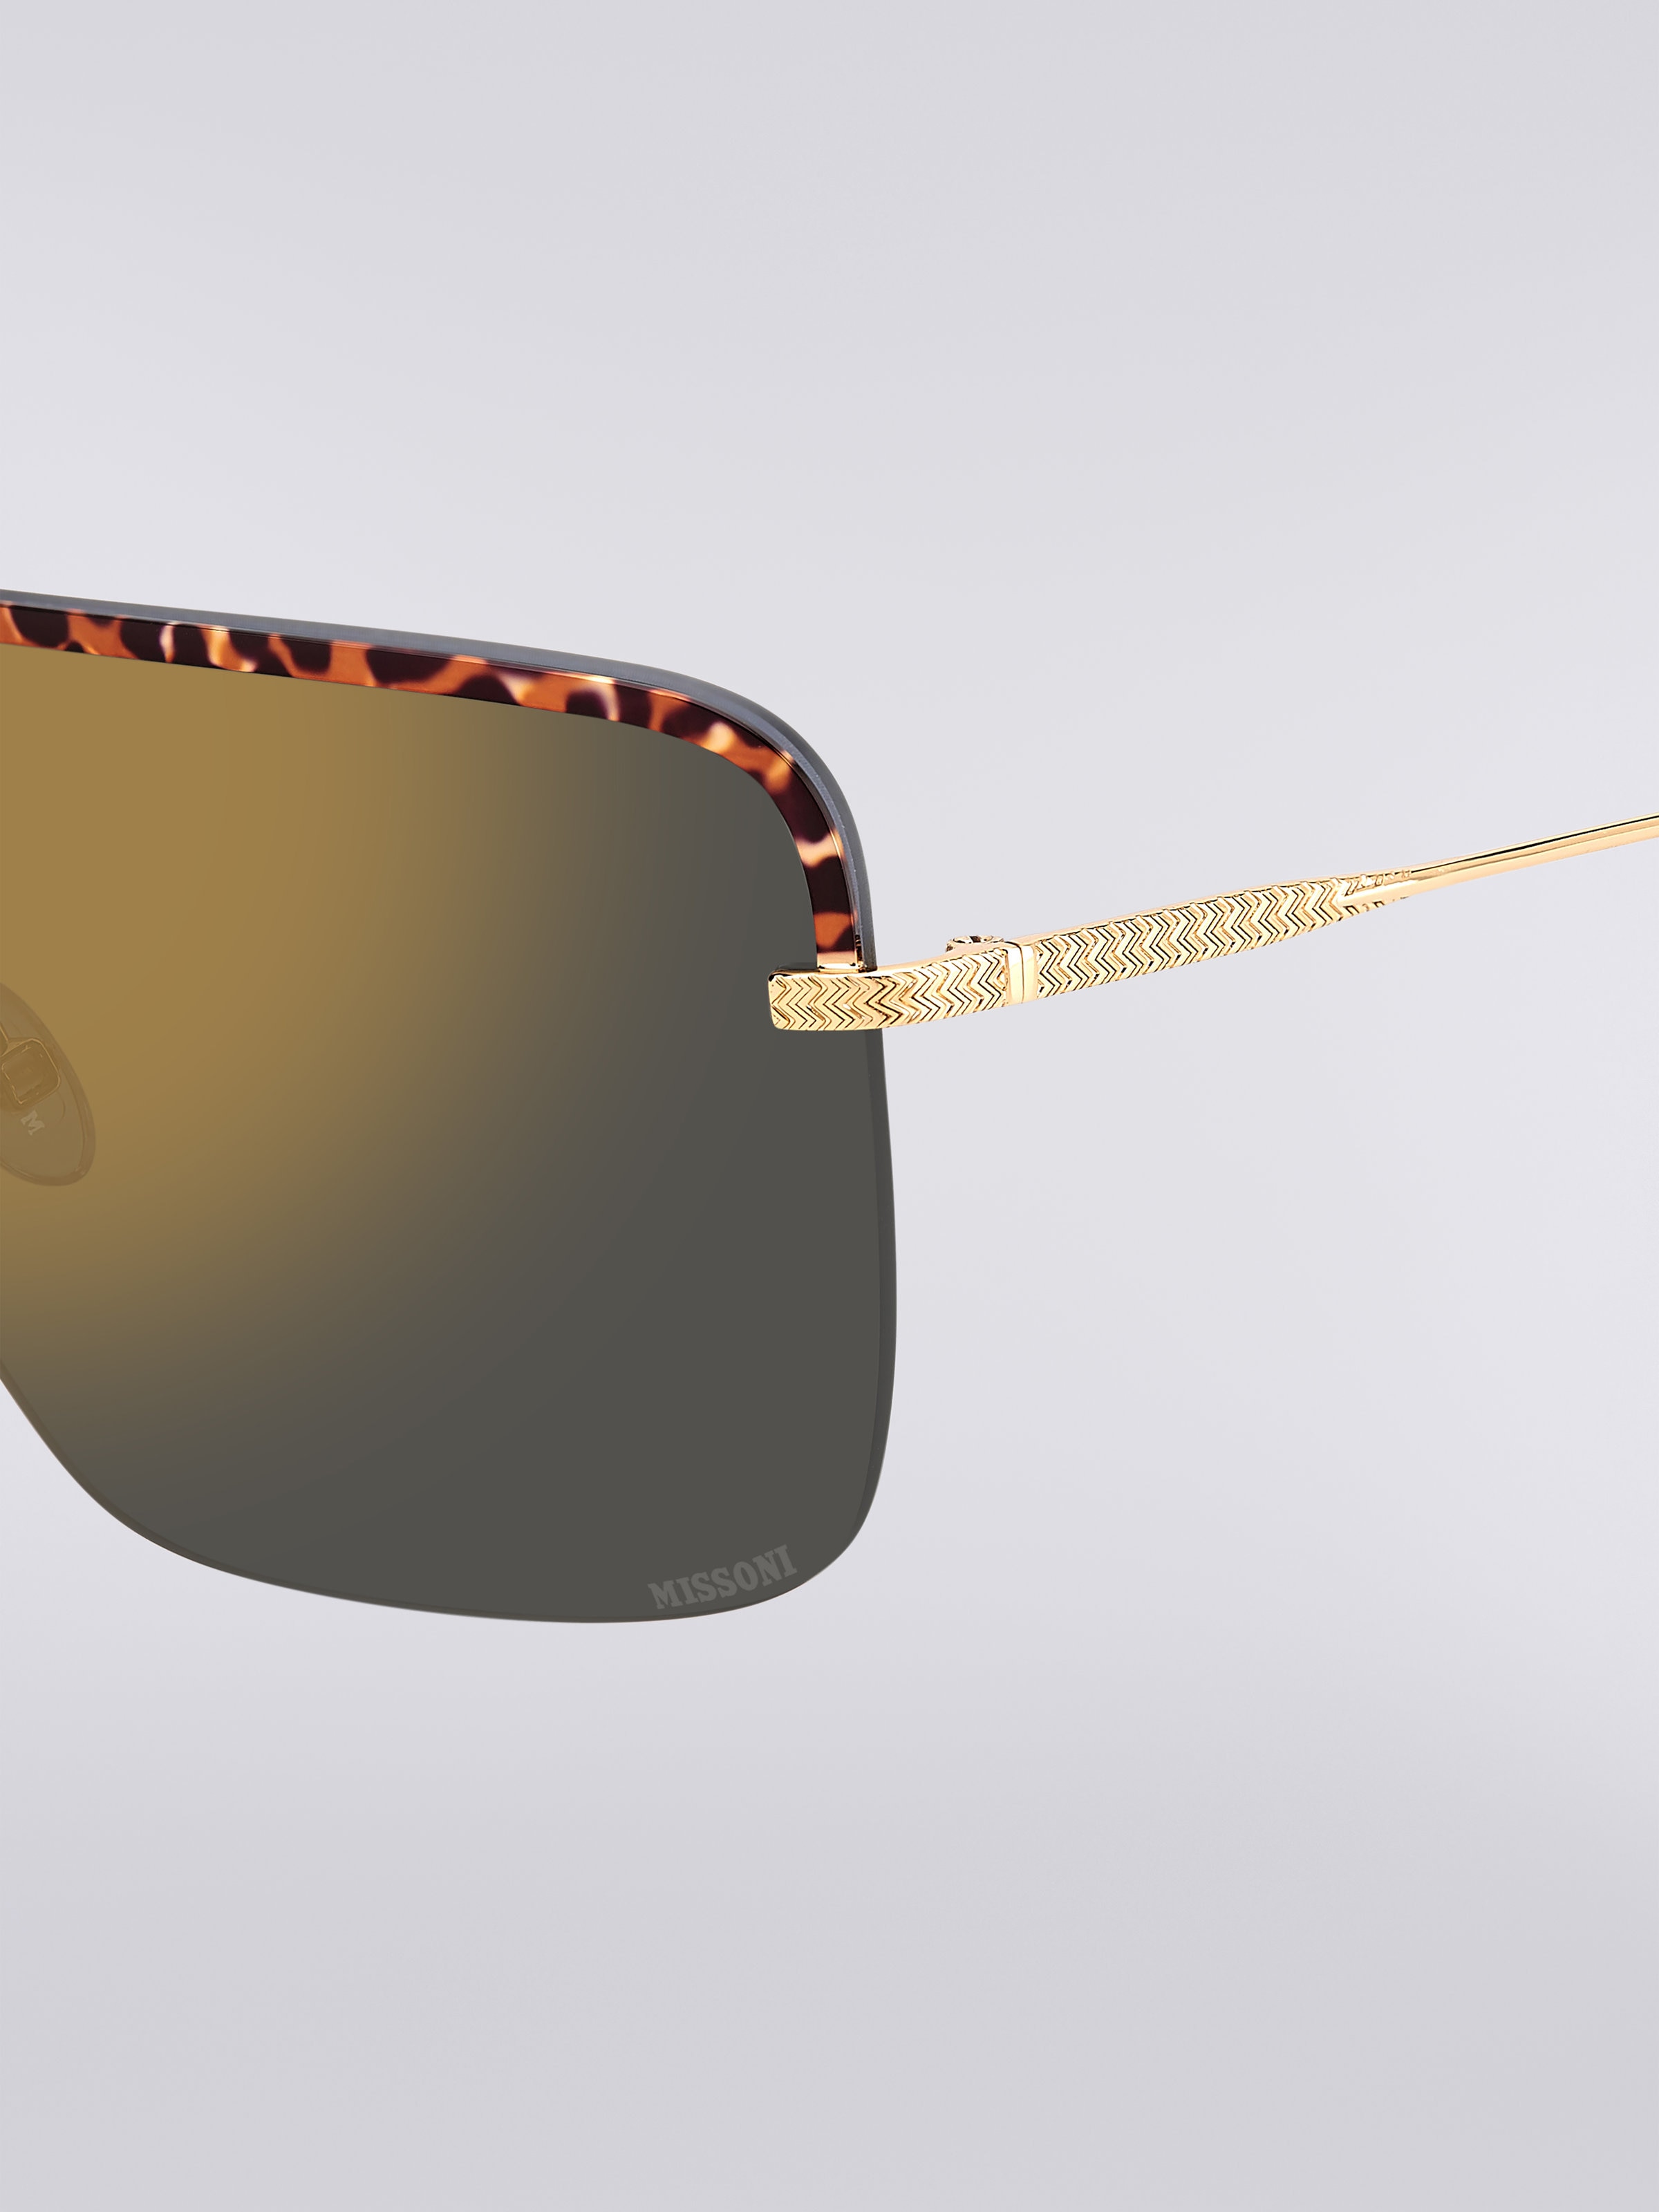 Missoni Seasonal Metal Sunglasses, Multicoloured  - 3